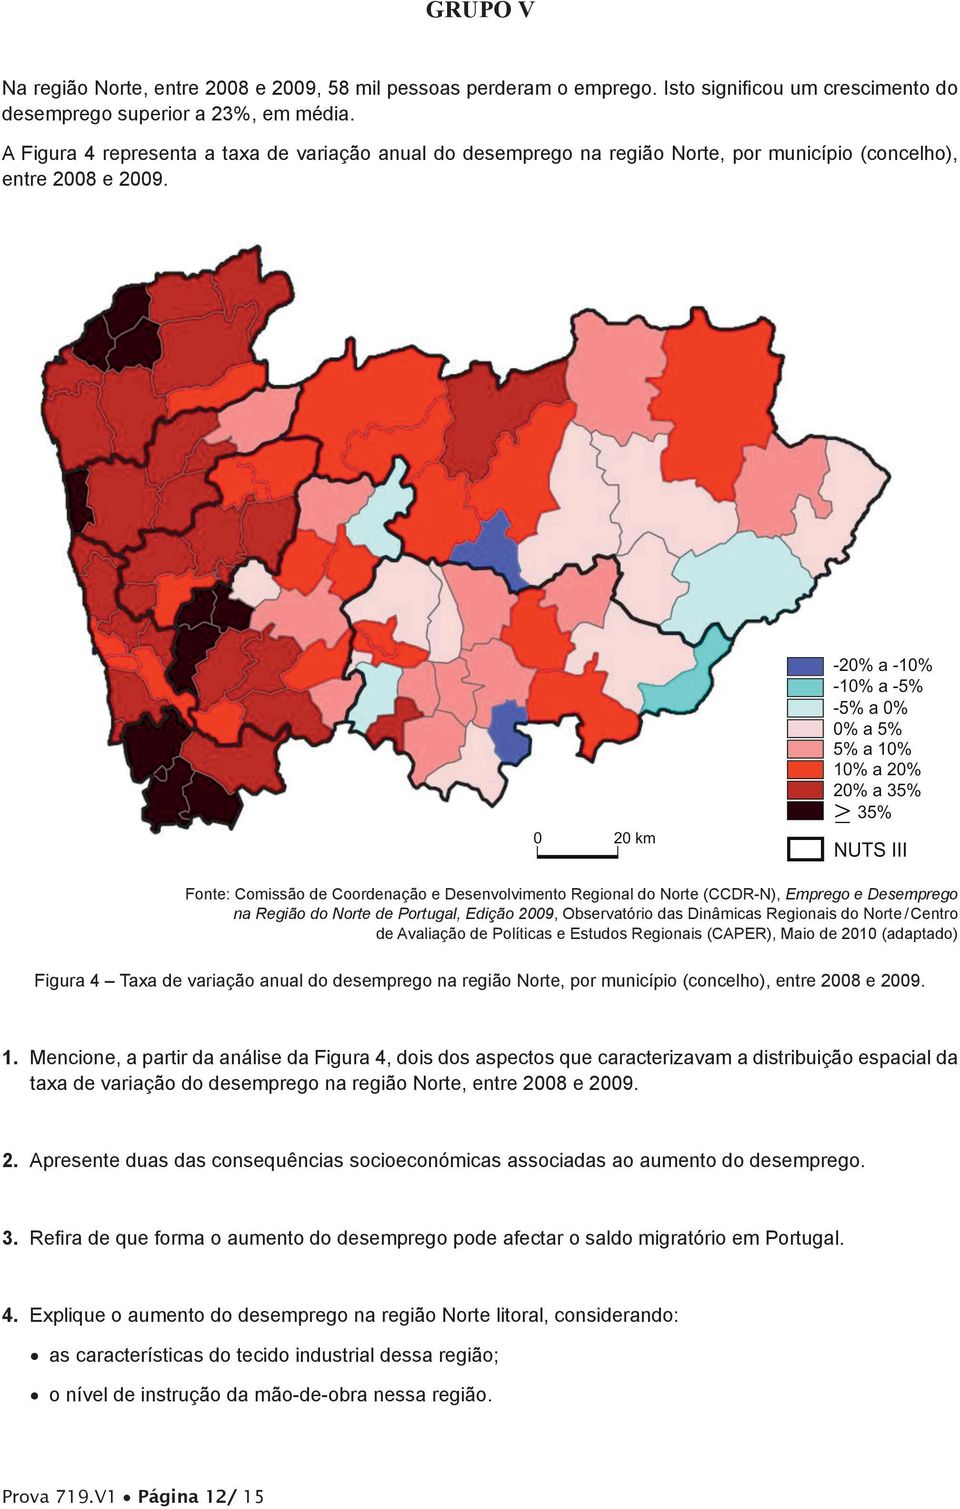 Fonte: Comissão de Coordenação e Desenvolvimento Regional do Norte (CCDR-N), Emprego e Desemprego na Região do Norte de Portugal, Edição 2009, Observatório das Dinâmicas Regionais do Norte / Centro